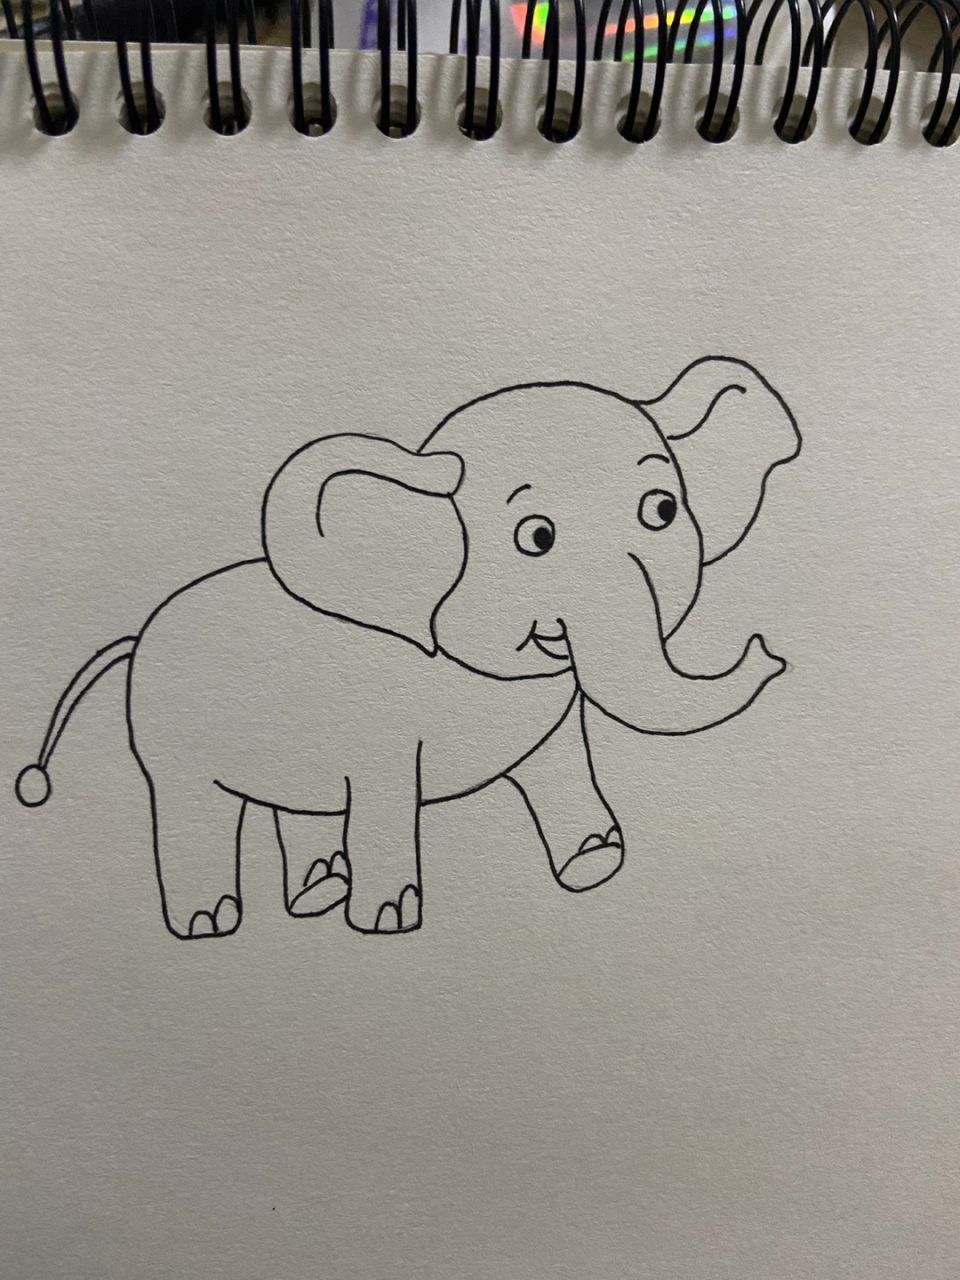 大象的简单画笔图片